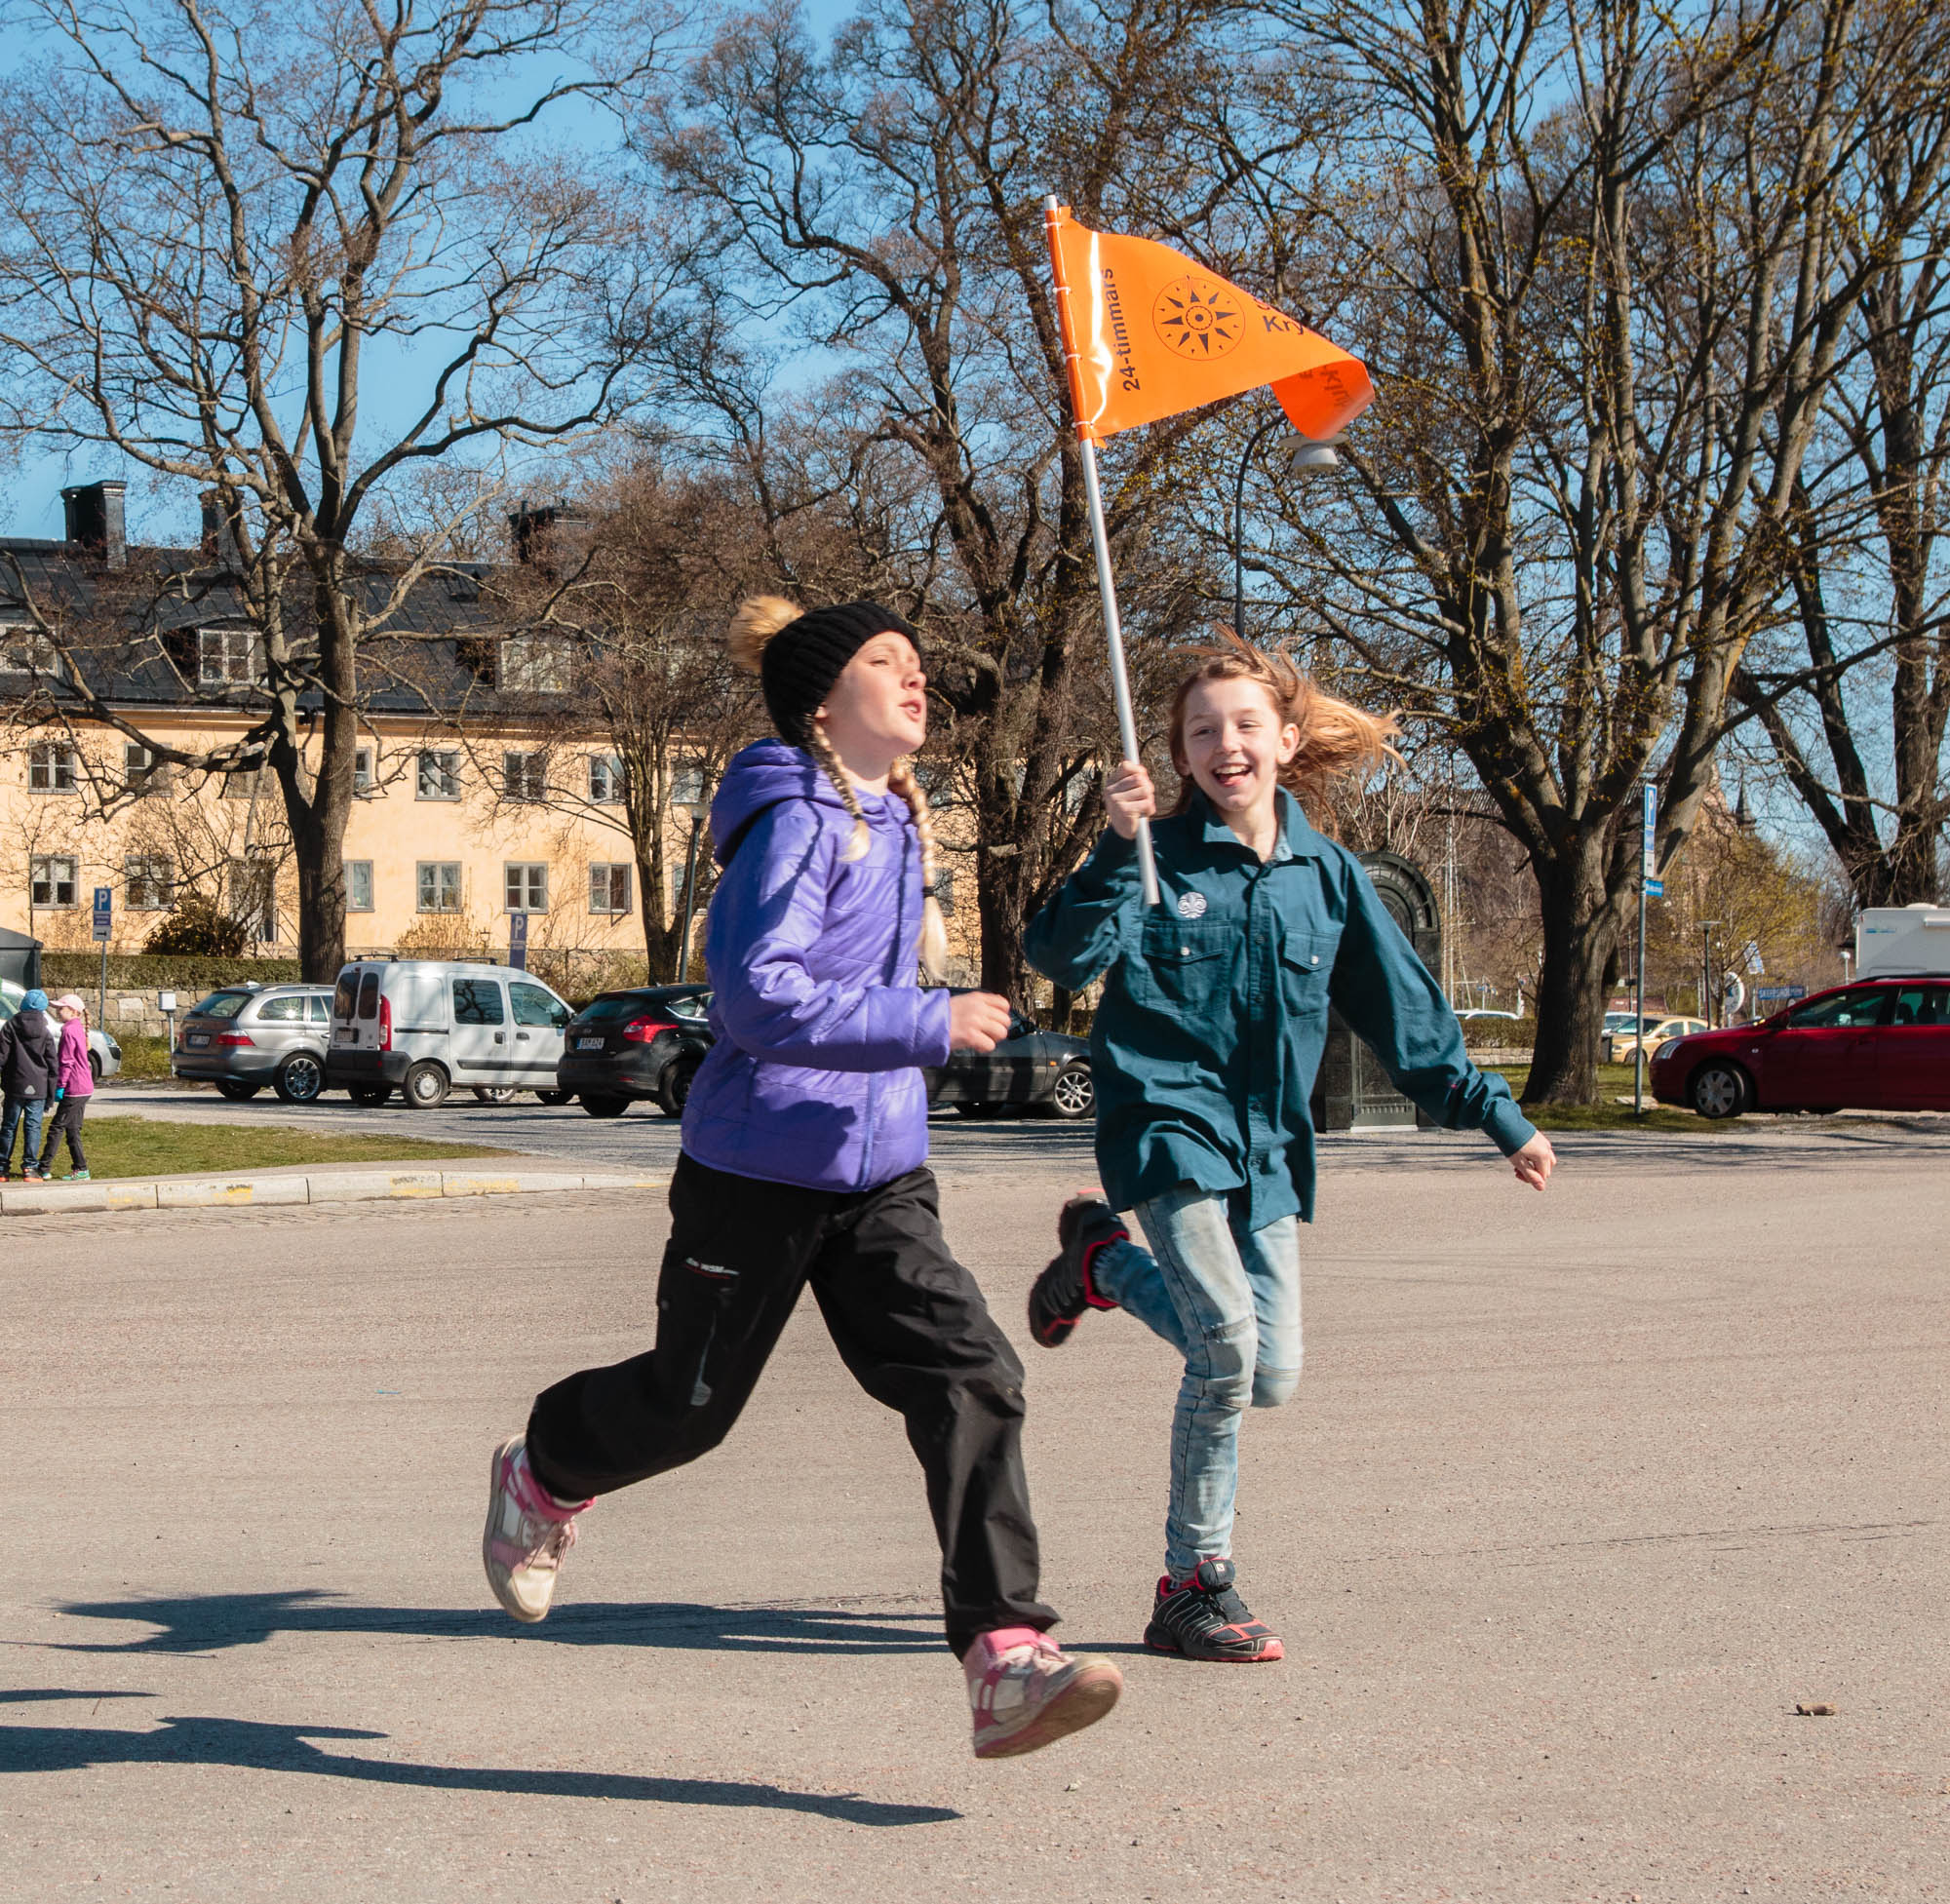 24-timmarsseglingarna som 12-minuterspromenad på Sjöscoutdagen